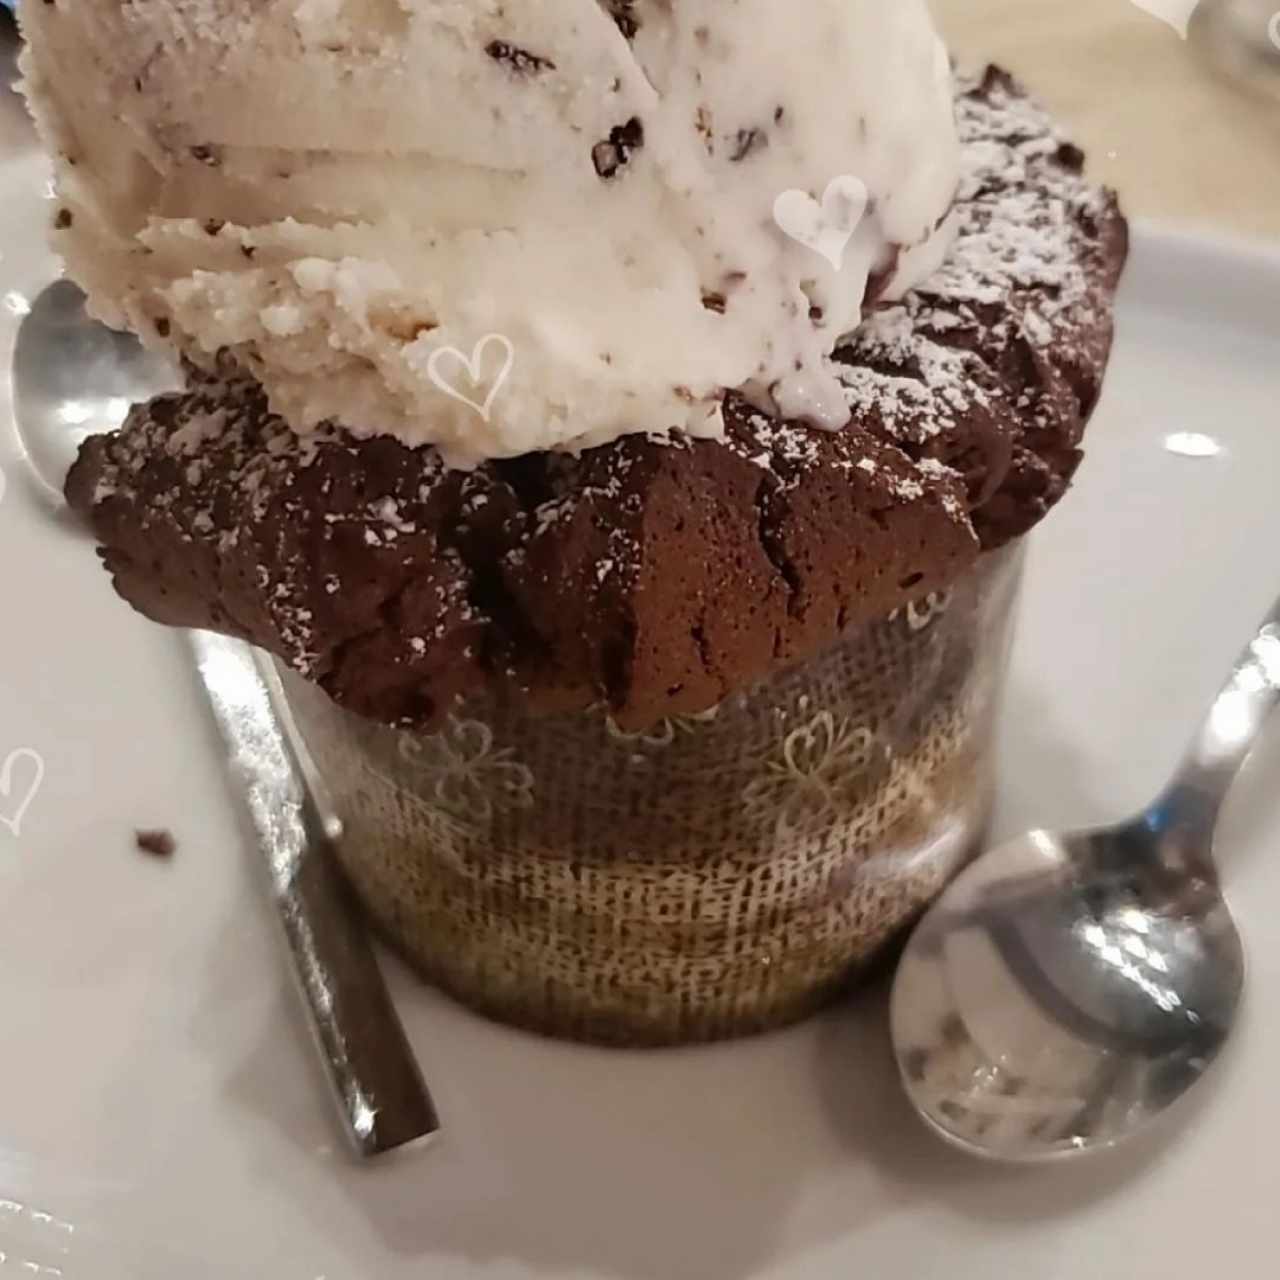 volcán de chocolate 